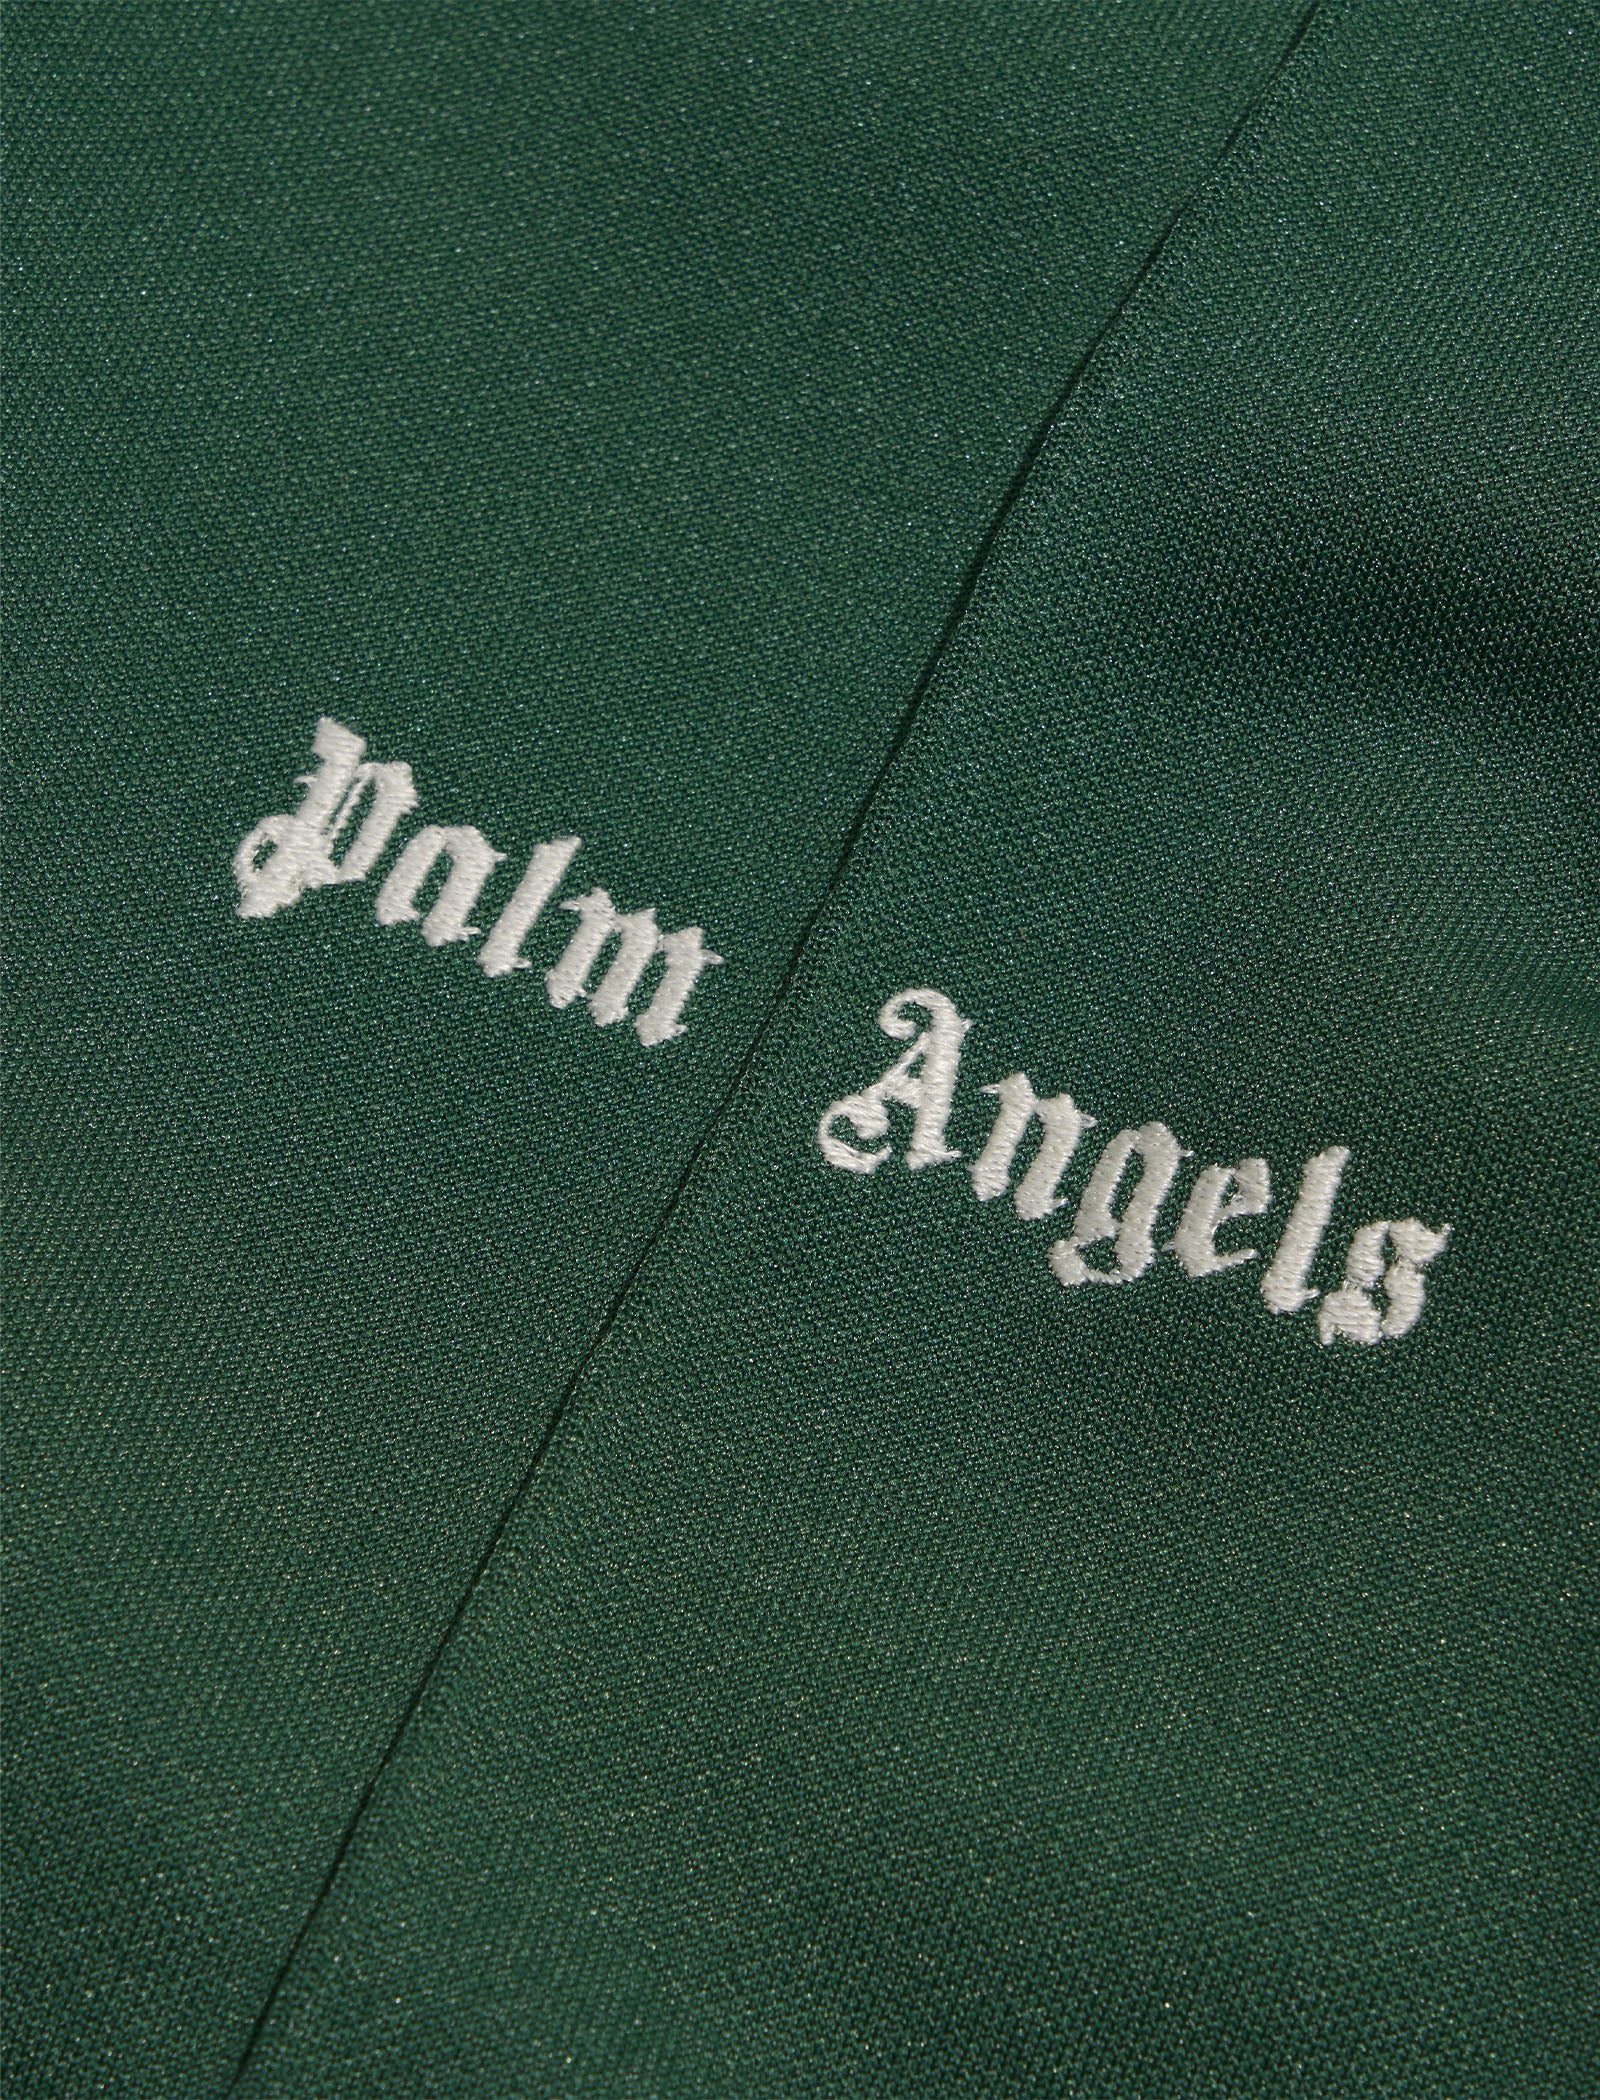 PALM ANGELS CLASSIC TRACK PANTS